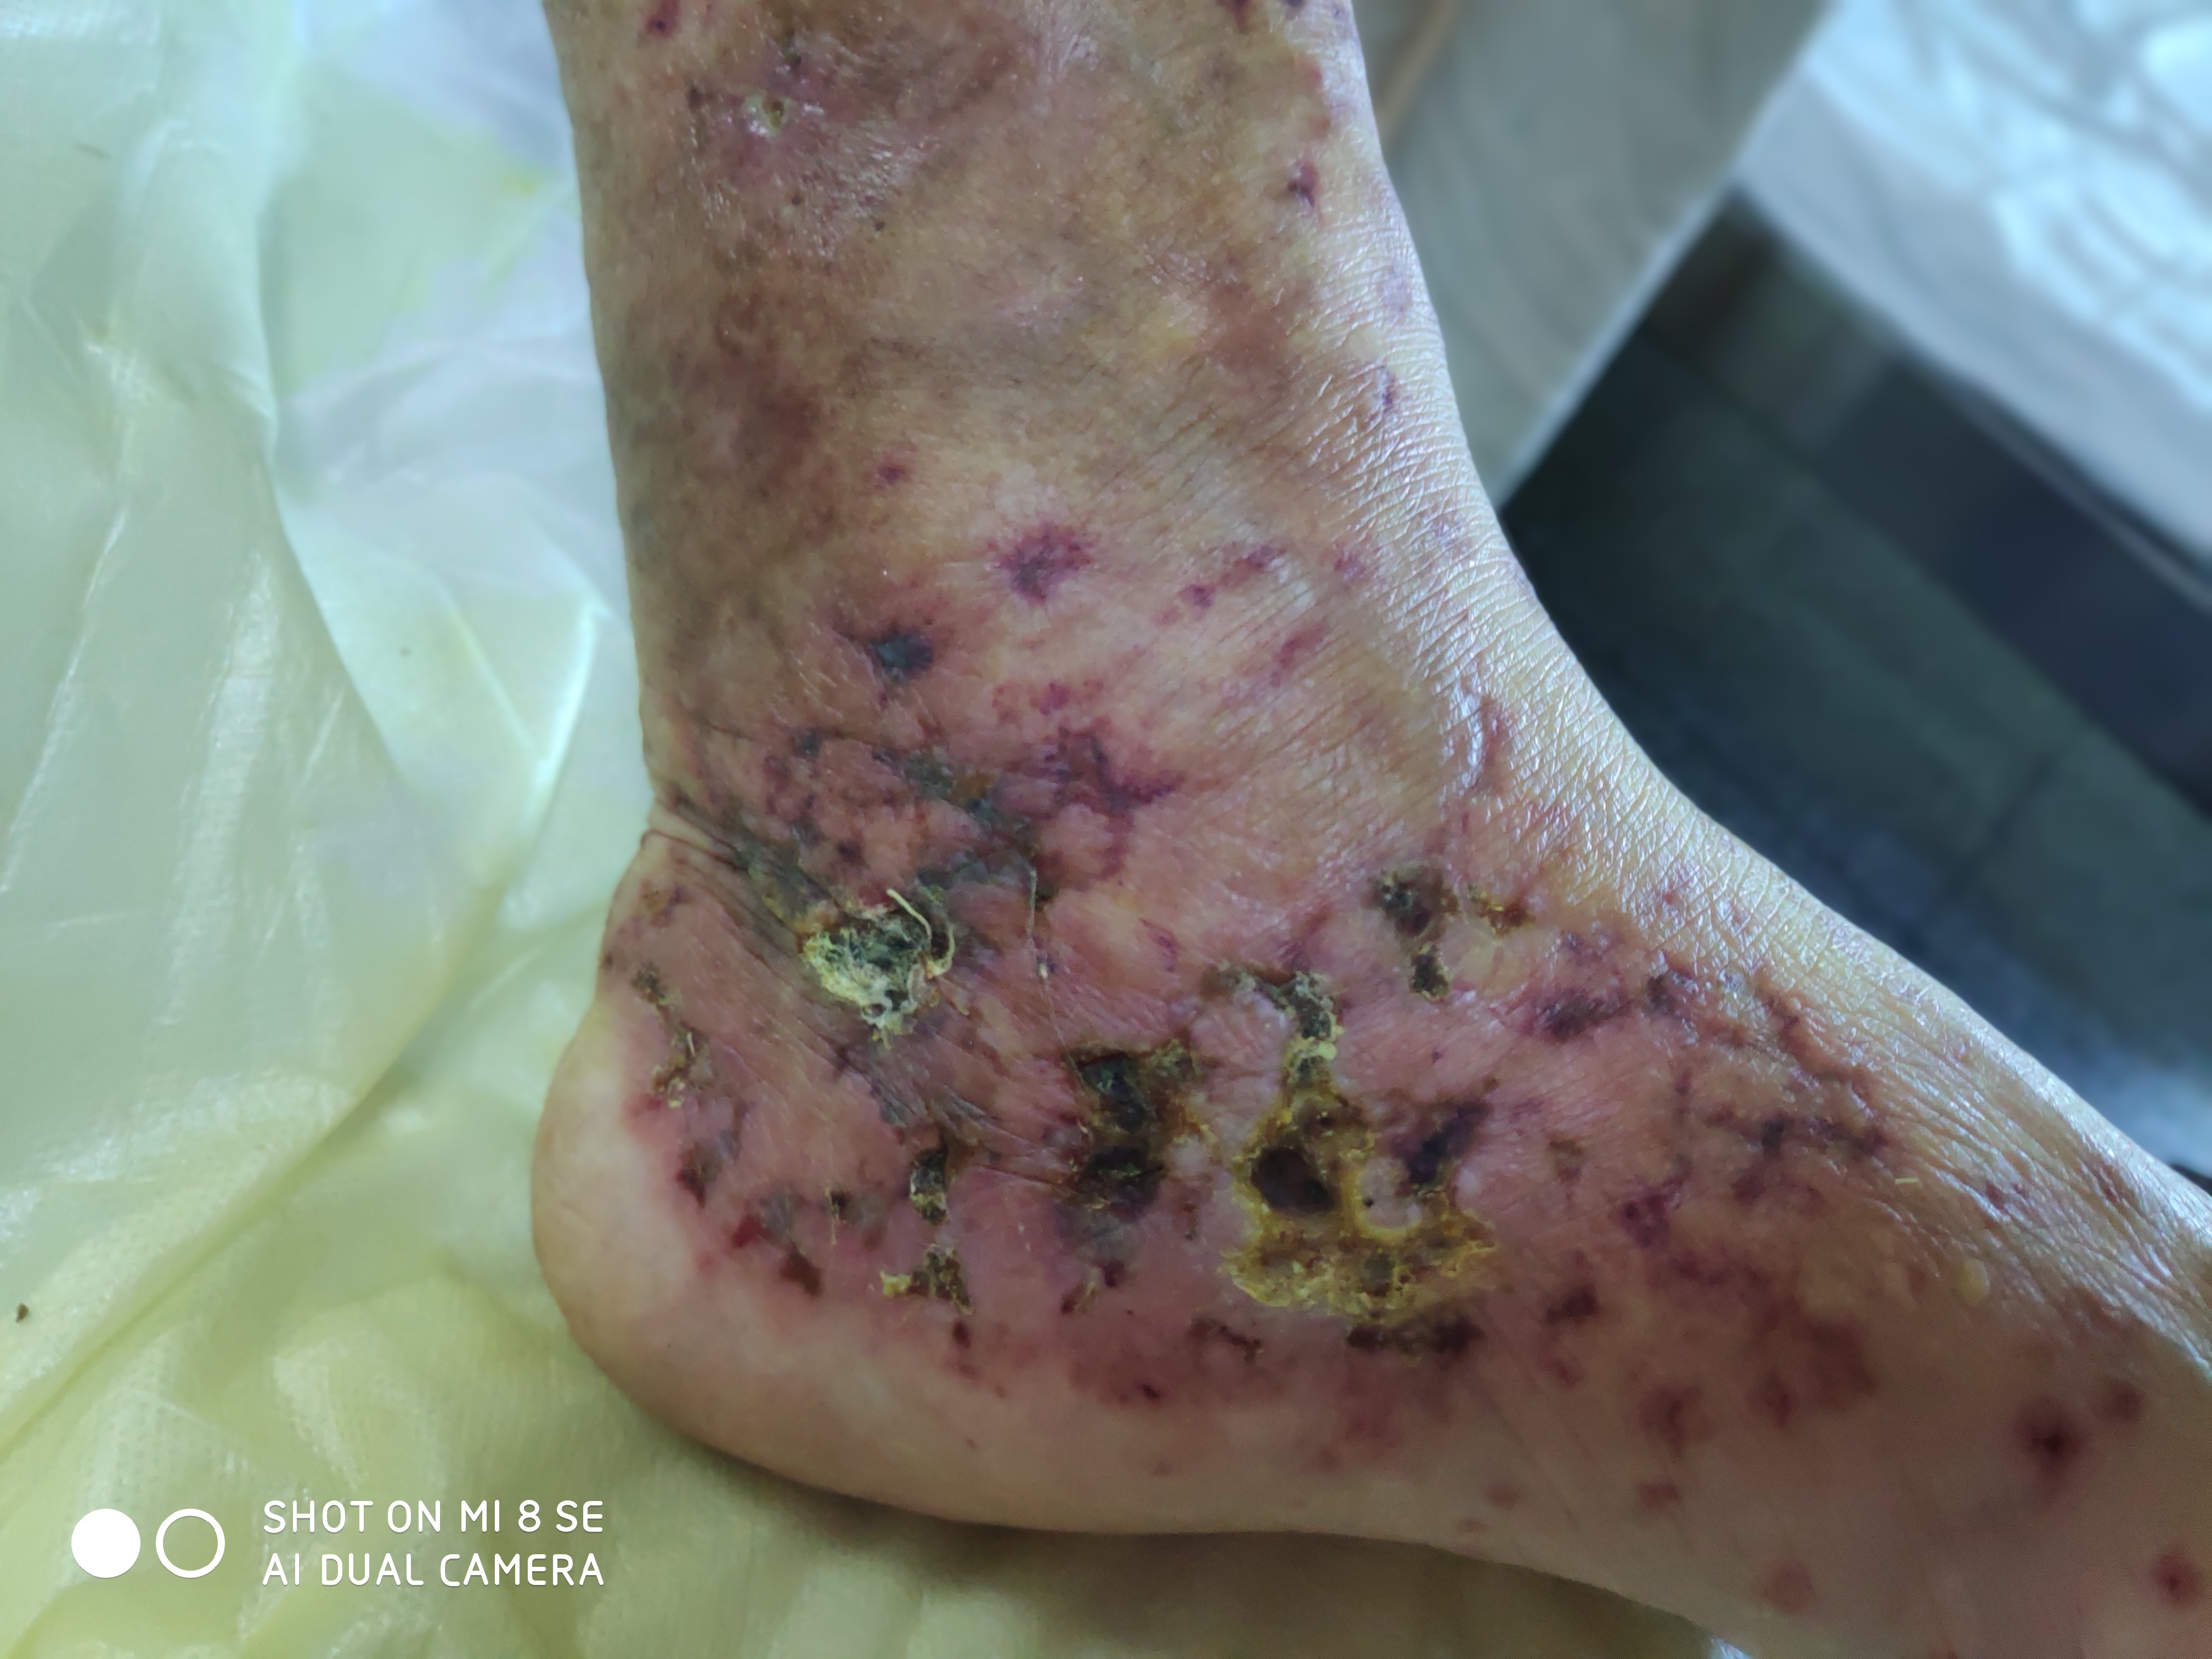 后皮疹反复发作,并发绿脓杆菌感染皮疹加重,下肢出现淤点淤斑及坏死